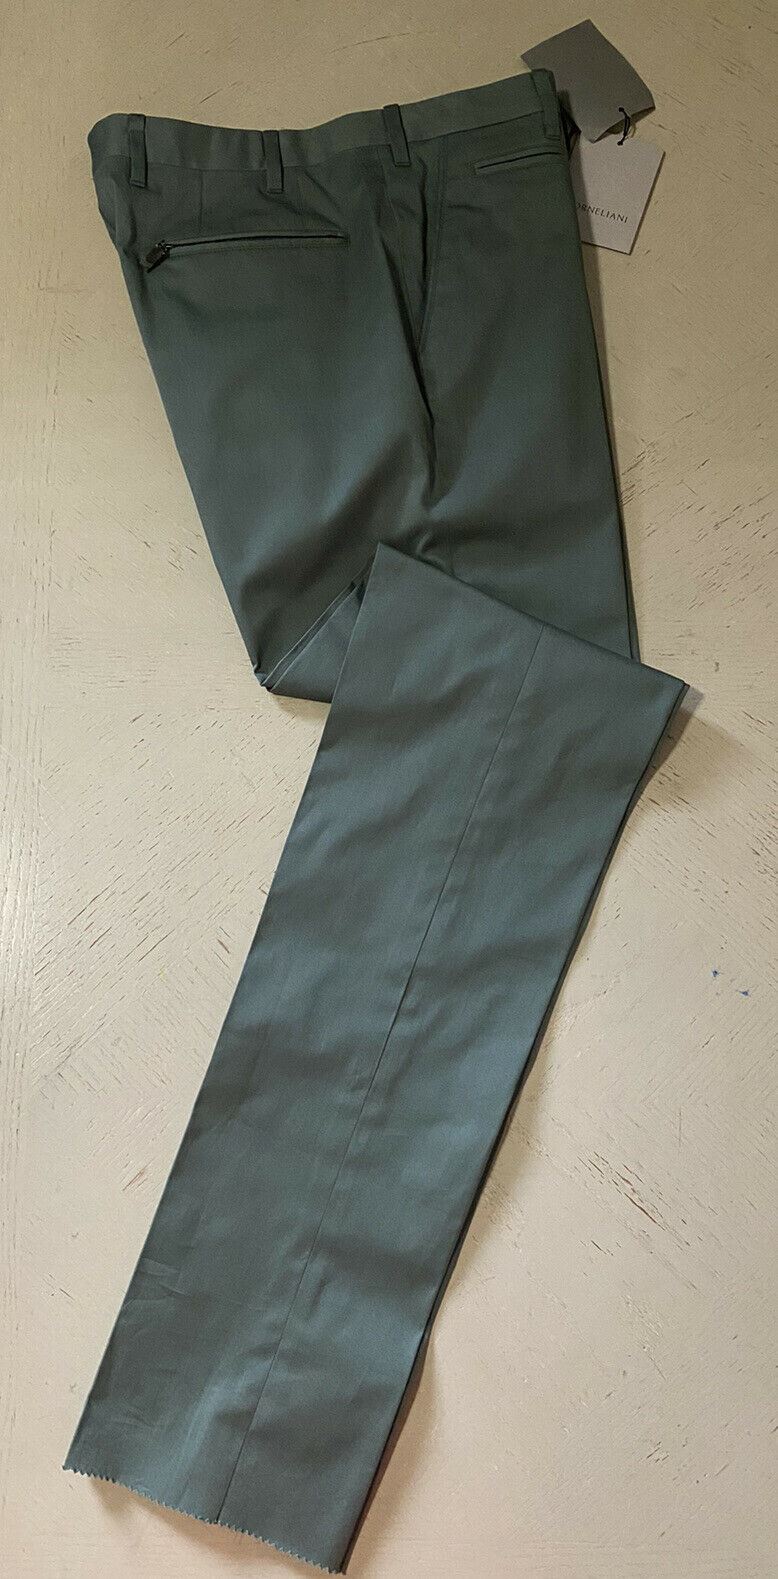 СЗТ $325 Мужские брюки Corneliani Цвет Зеленый Размер 32 США (48 ЕС)